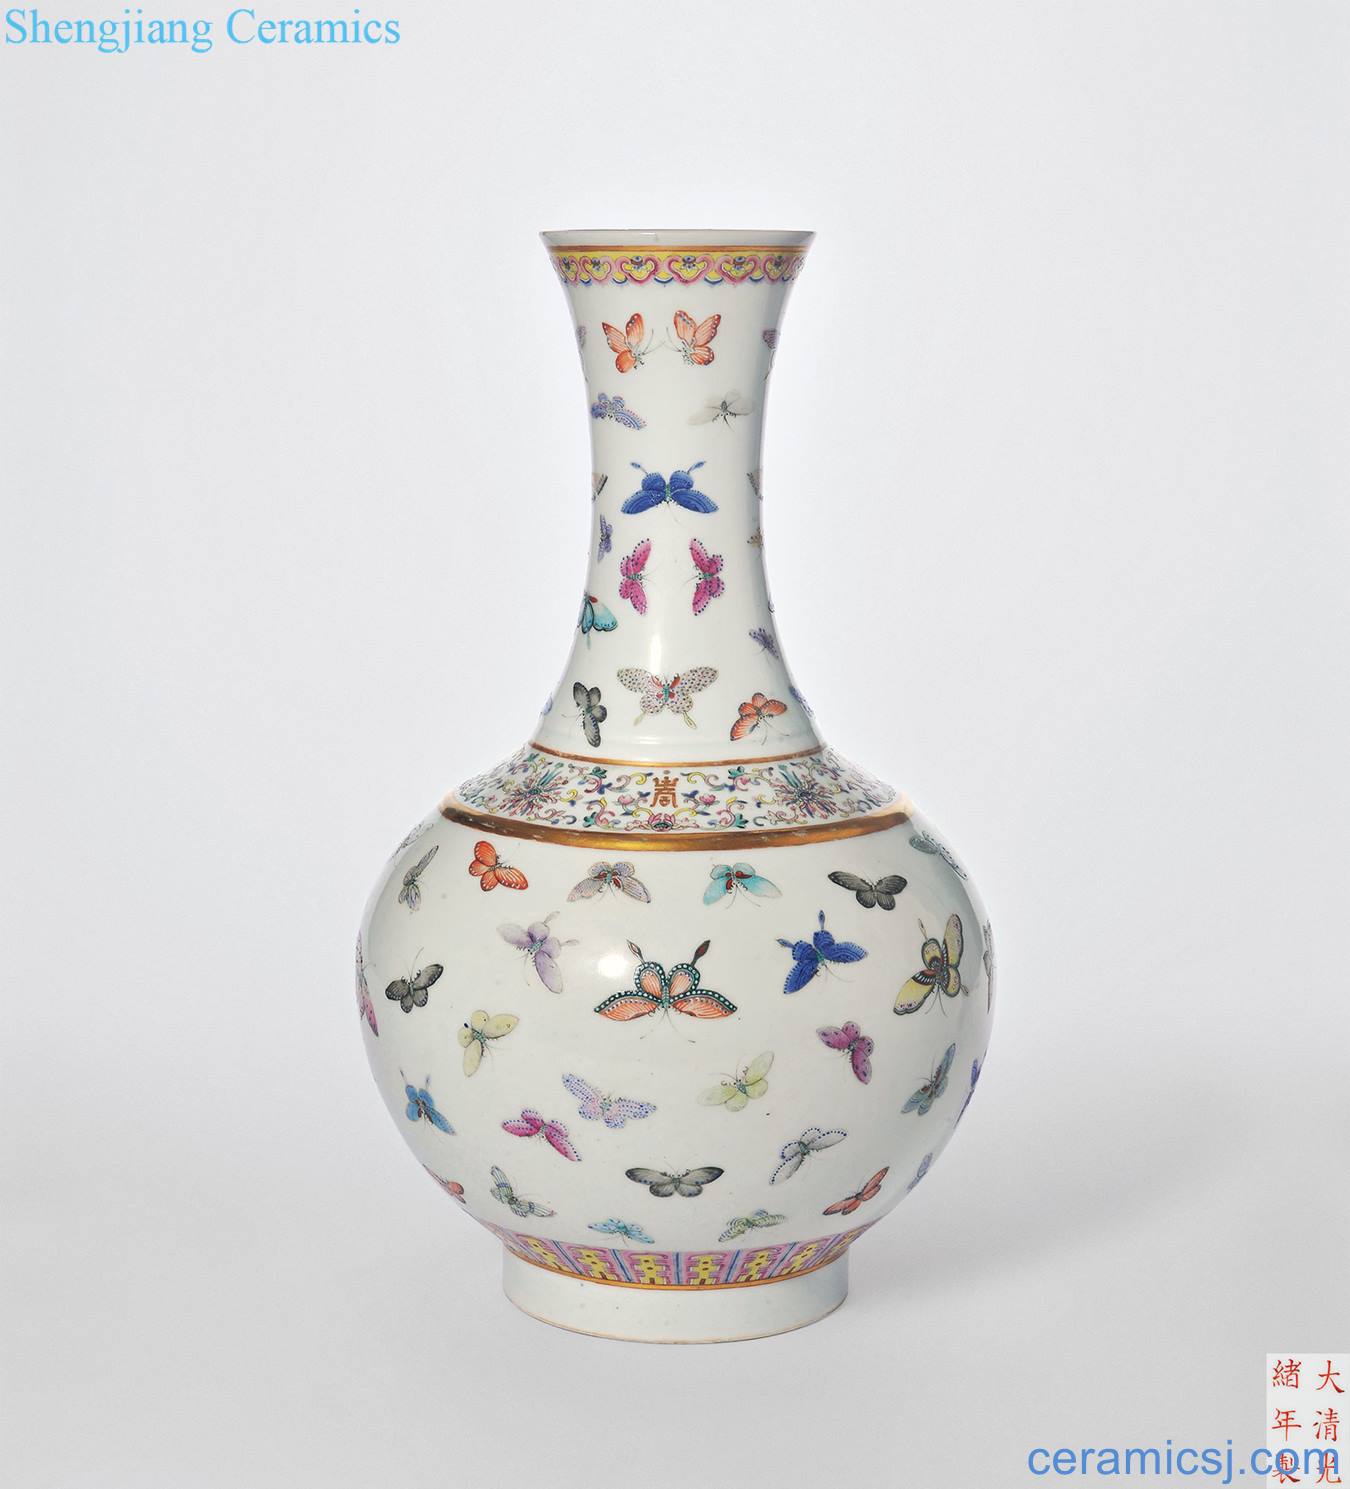 Pastel reign of qing emperor guangxu TuShang jars